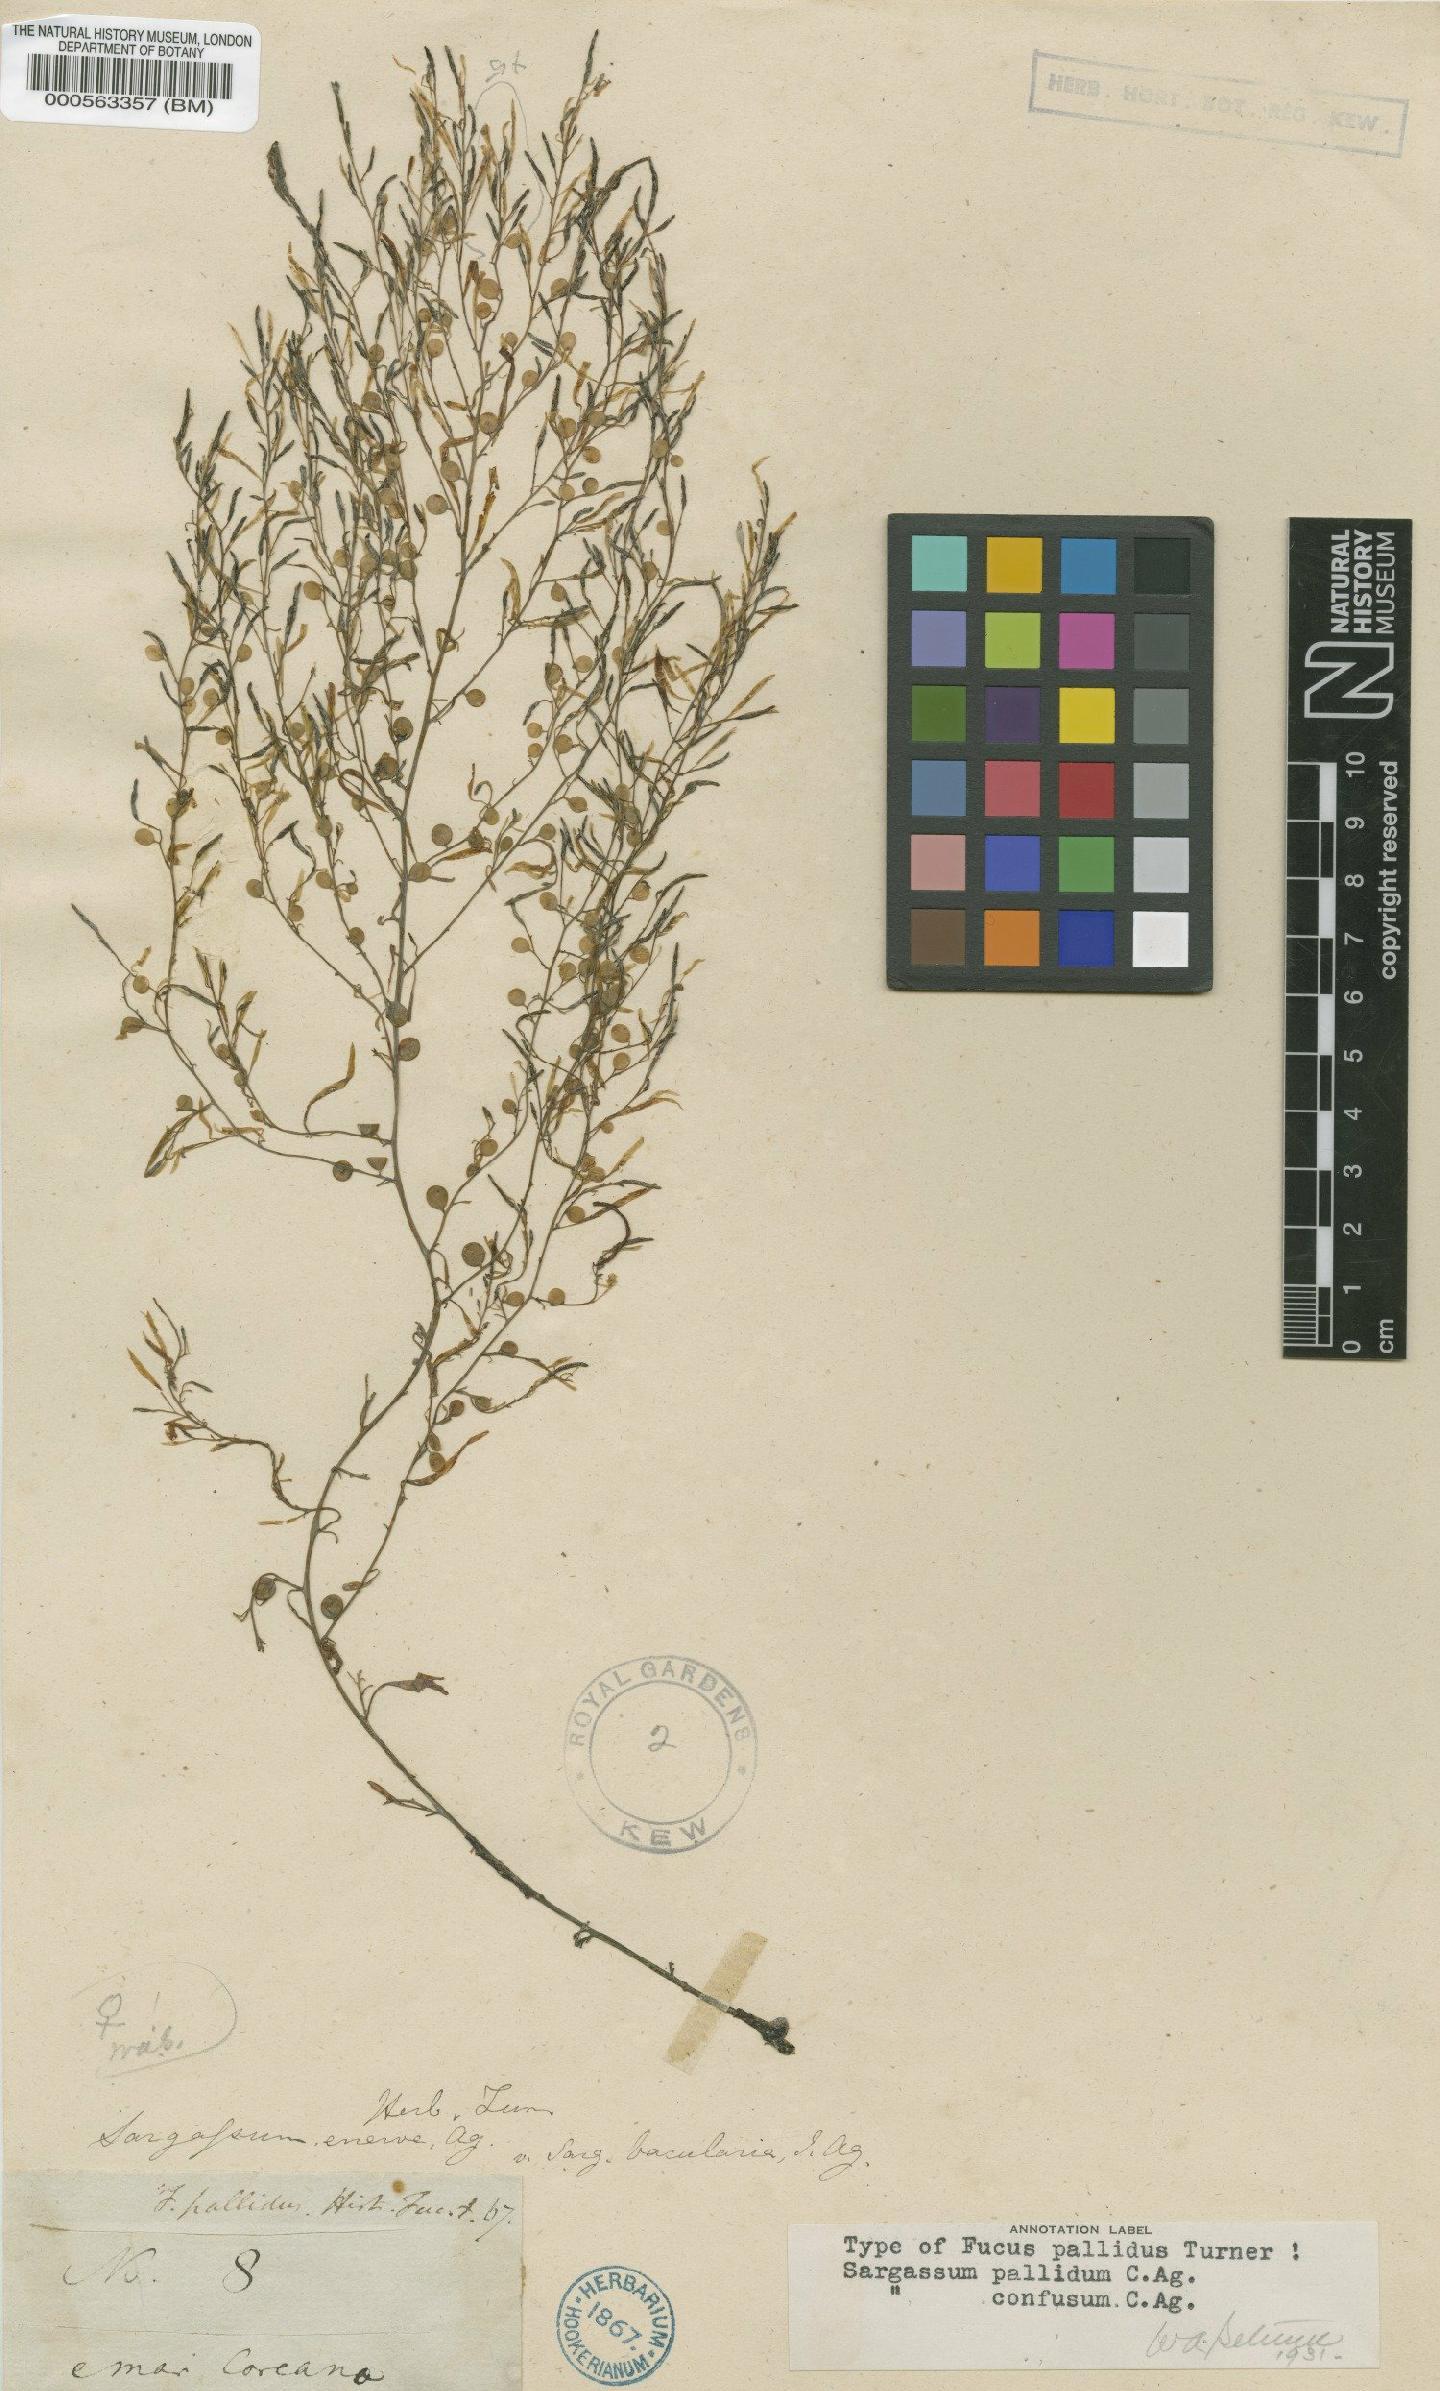 To NHMUK collection (Sargassum pallidum (Turner) C.Agardh; Isosyntype; NHMUK:ecatalogue:4723059)